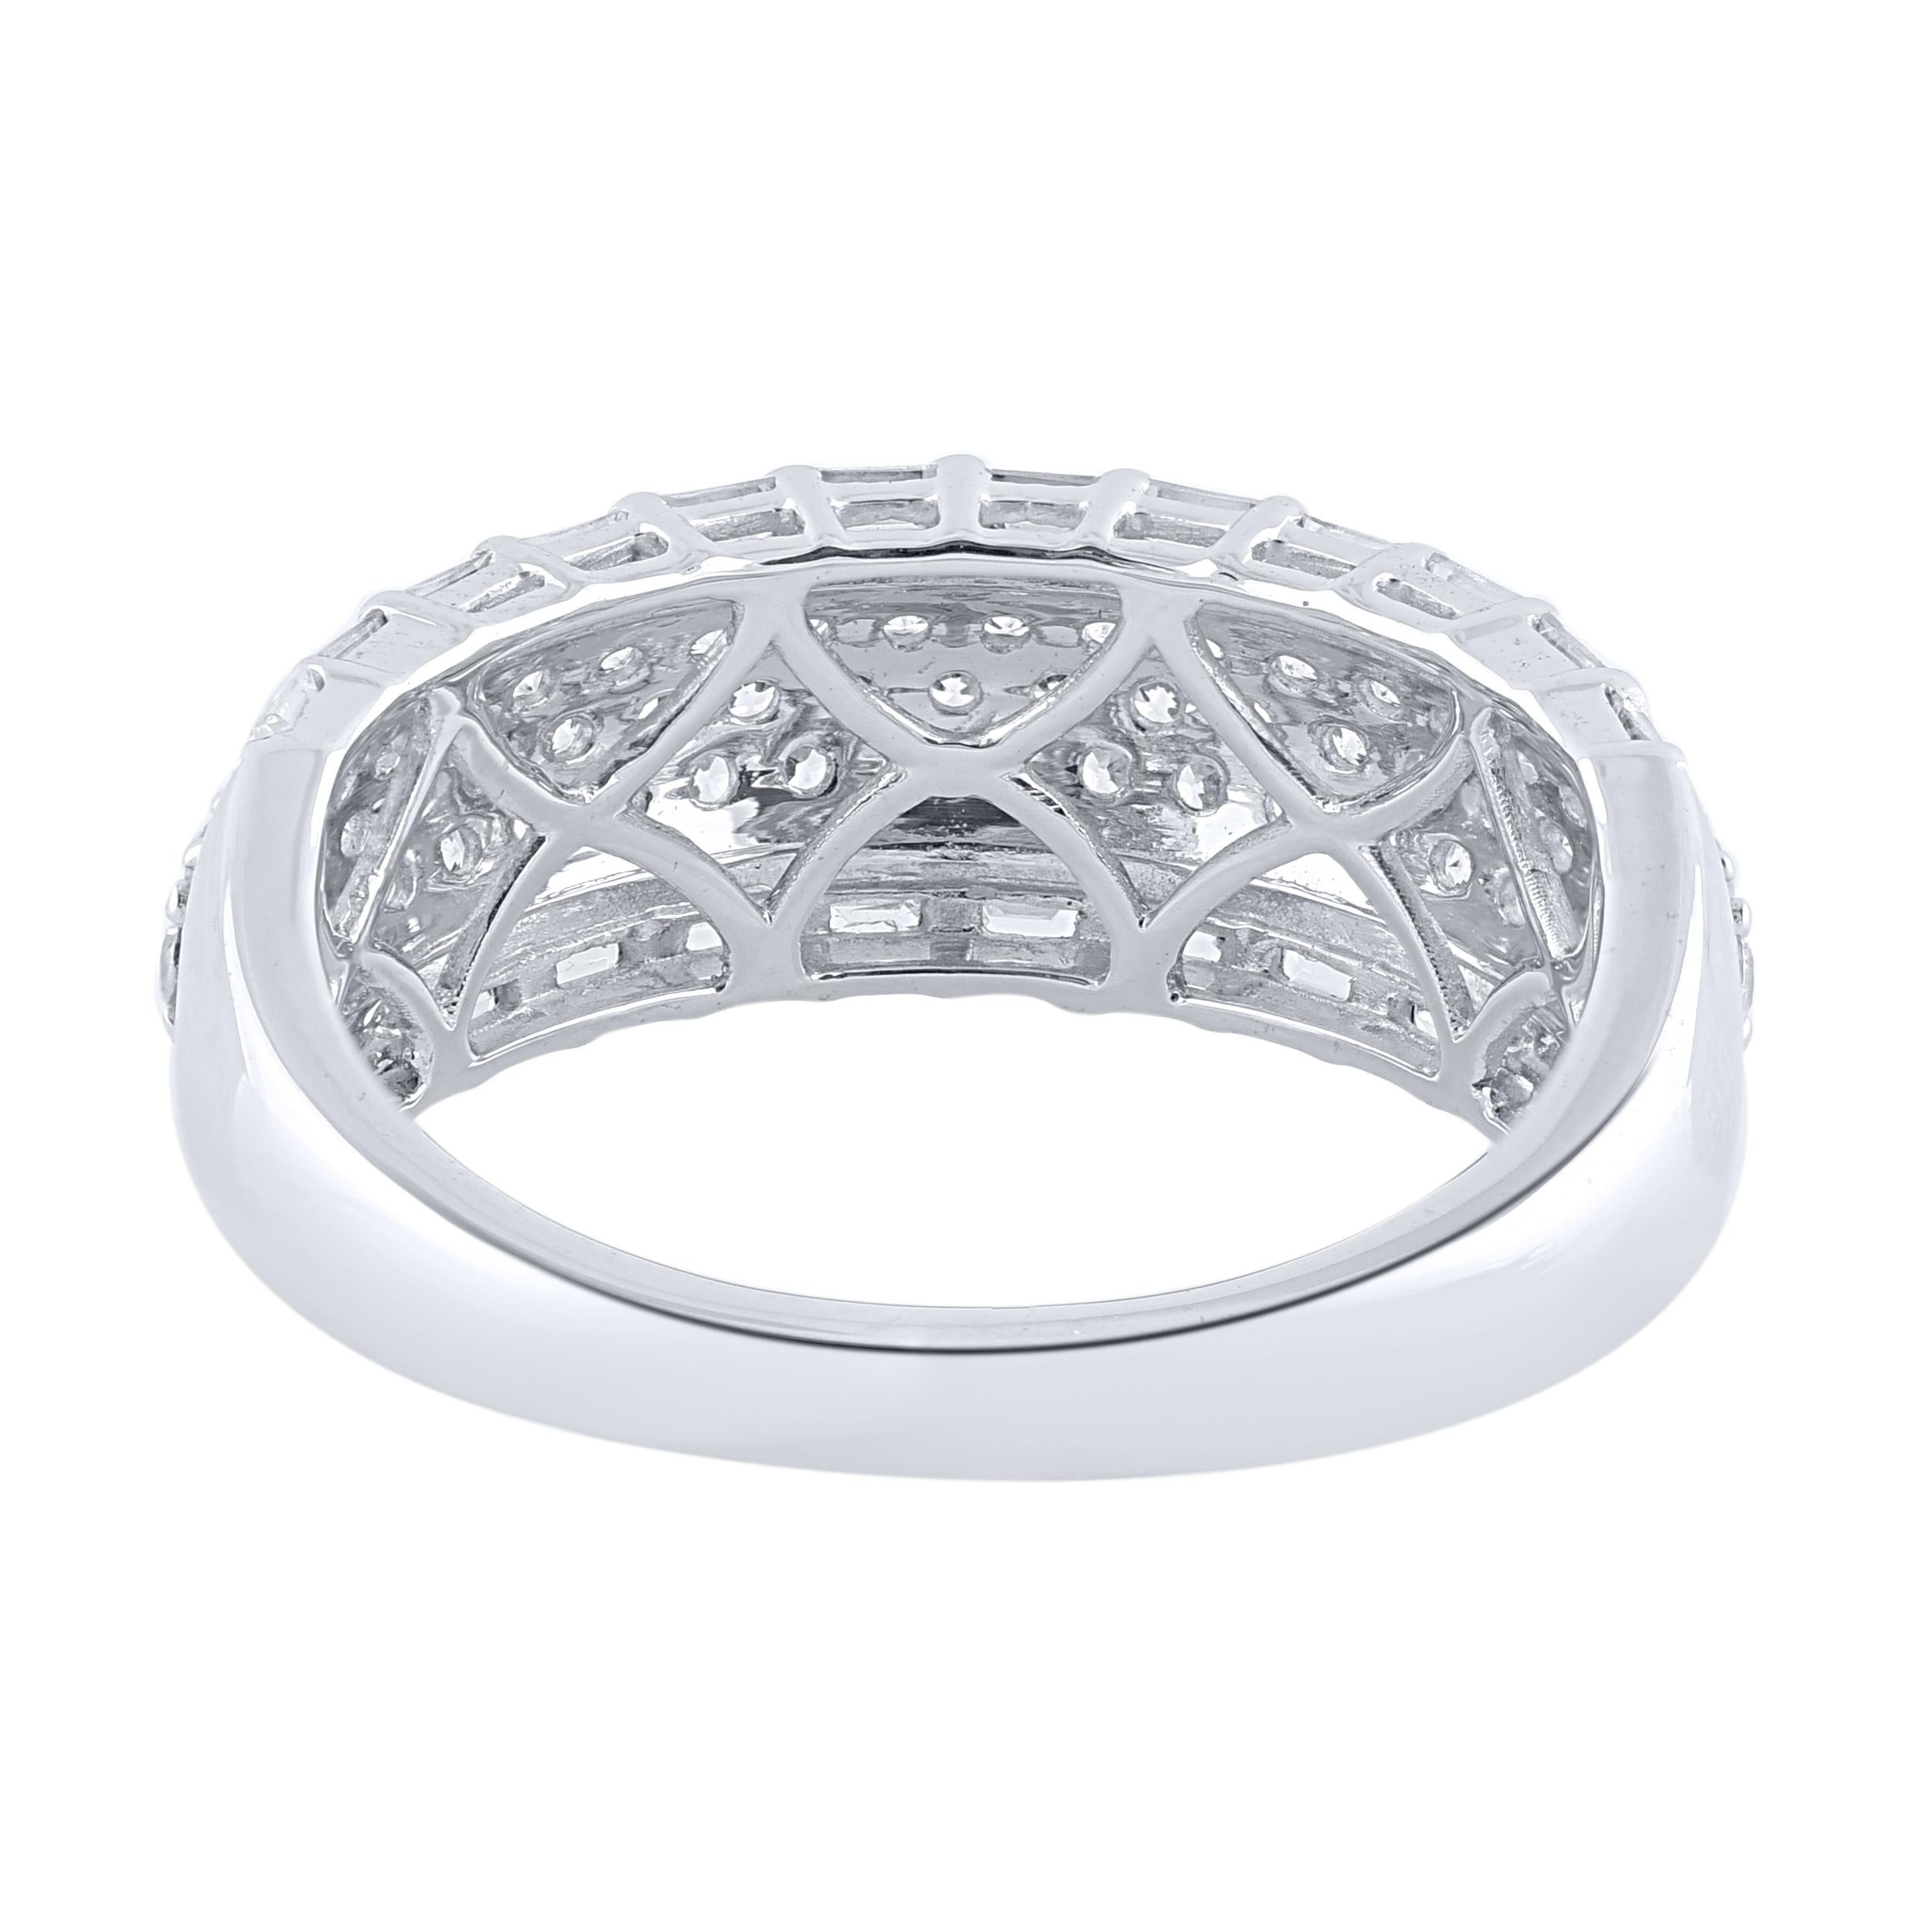 Dieses wahrhaft exquisite diamantene Verlobungsband wird wegen seiner klassischen Schönheit und Eleganz bewundert werden. Dieser Ring ist aus 14KT Weißgold gefertigt und mit 85 natürlichen Diamanten im Brillant- und Baguetteschliff in Pflaster- und